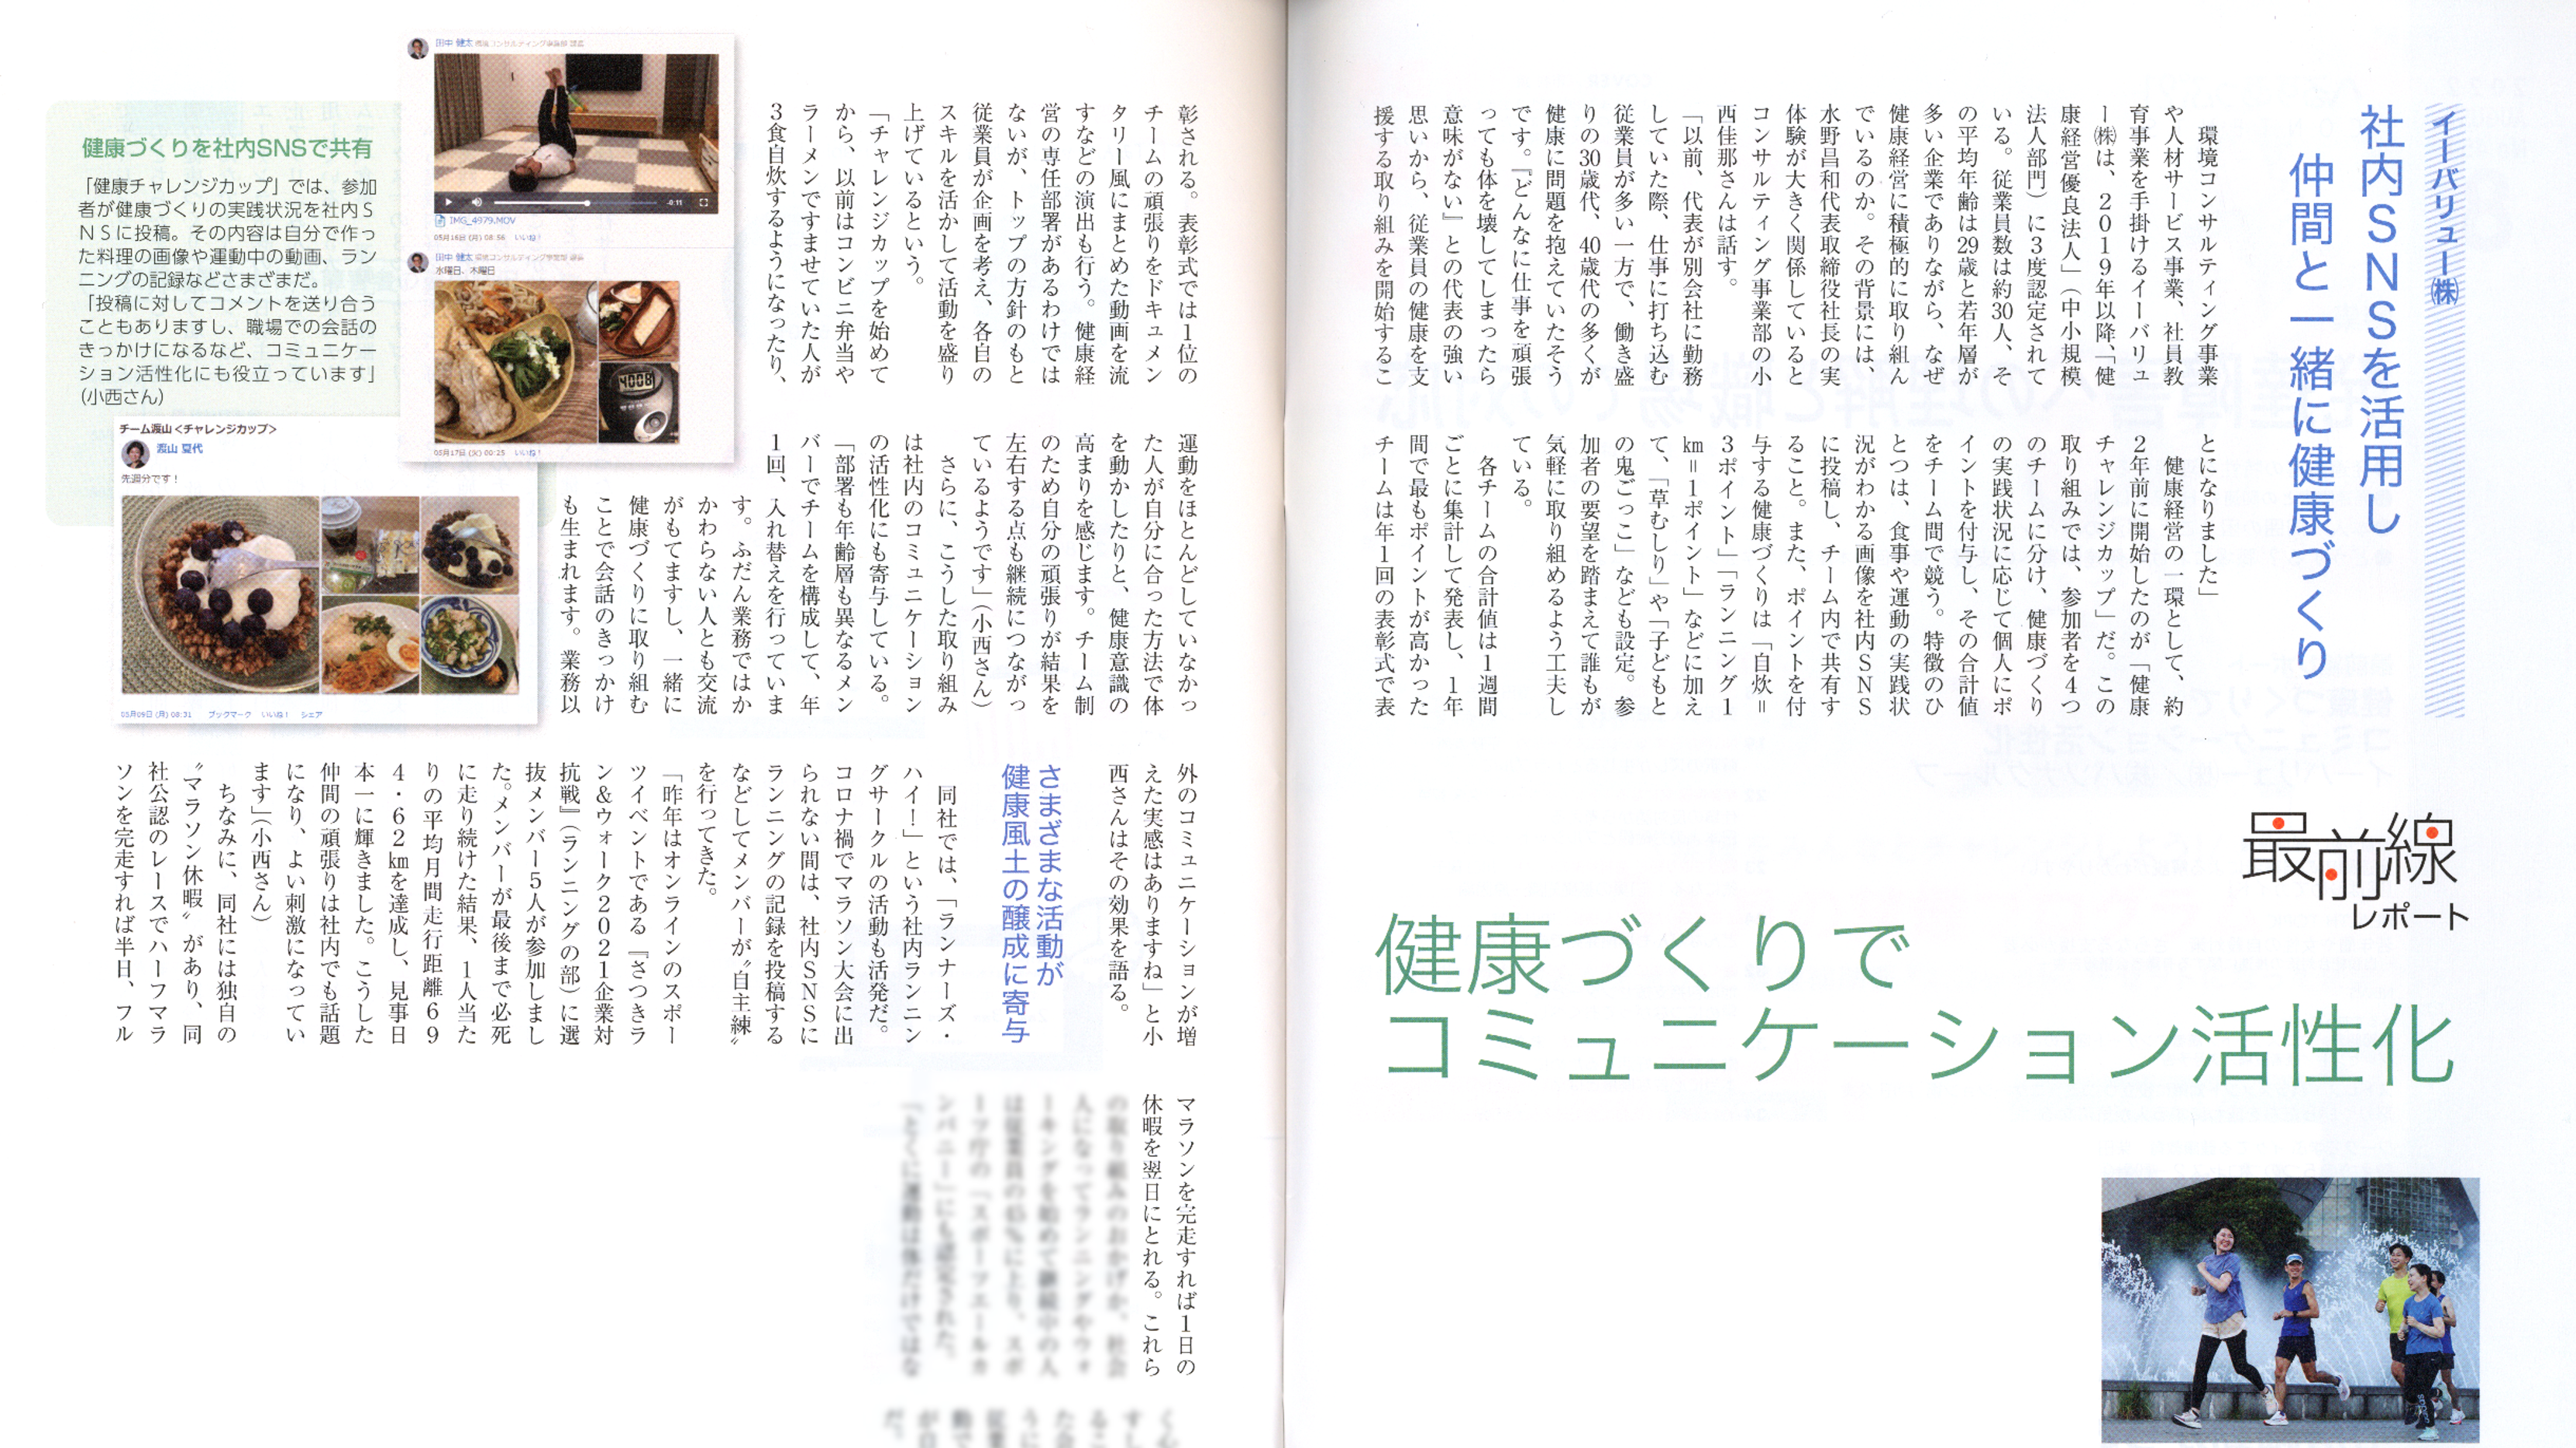 雑誌「へるすあっぷ21」にて、弊社の健康経営への取り組みが掲載されました